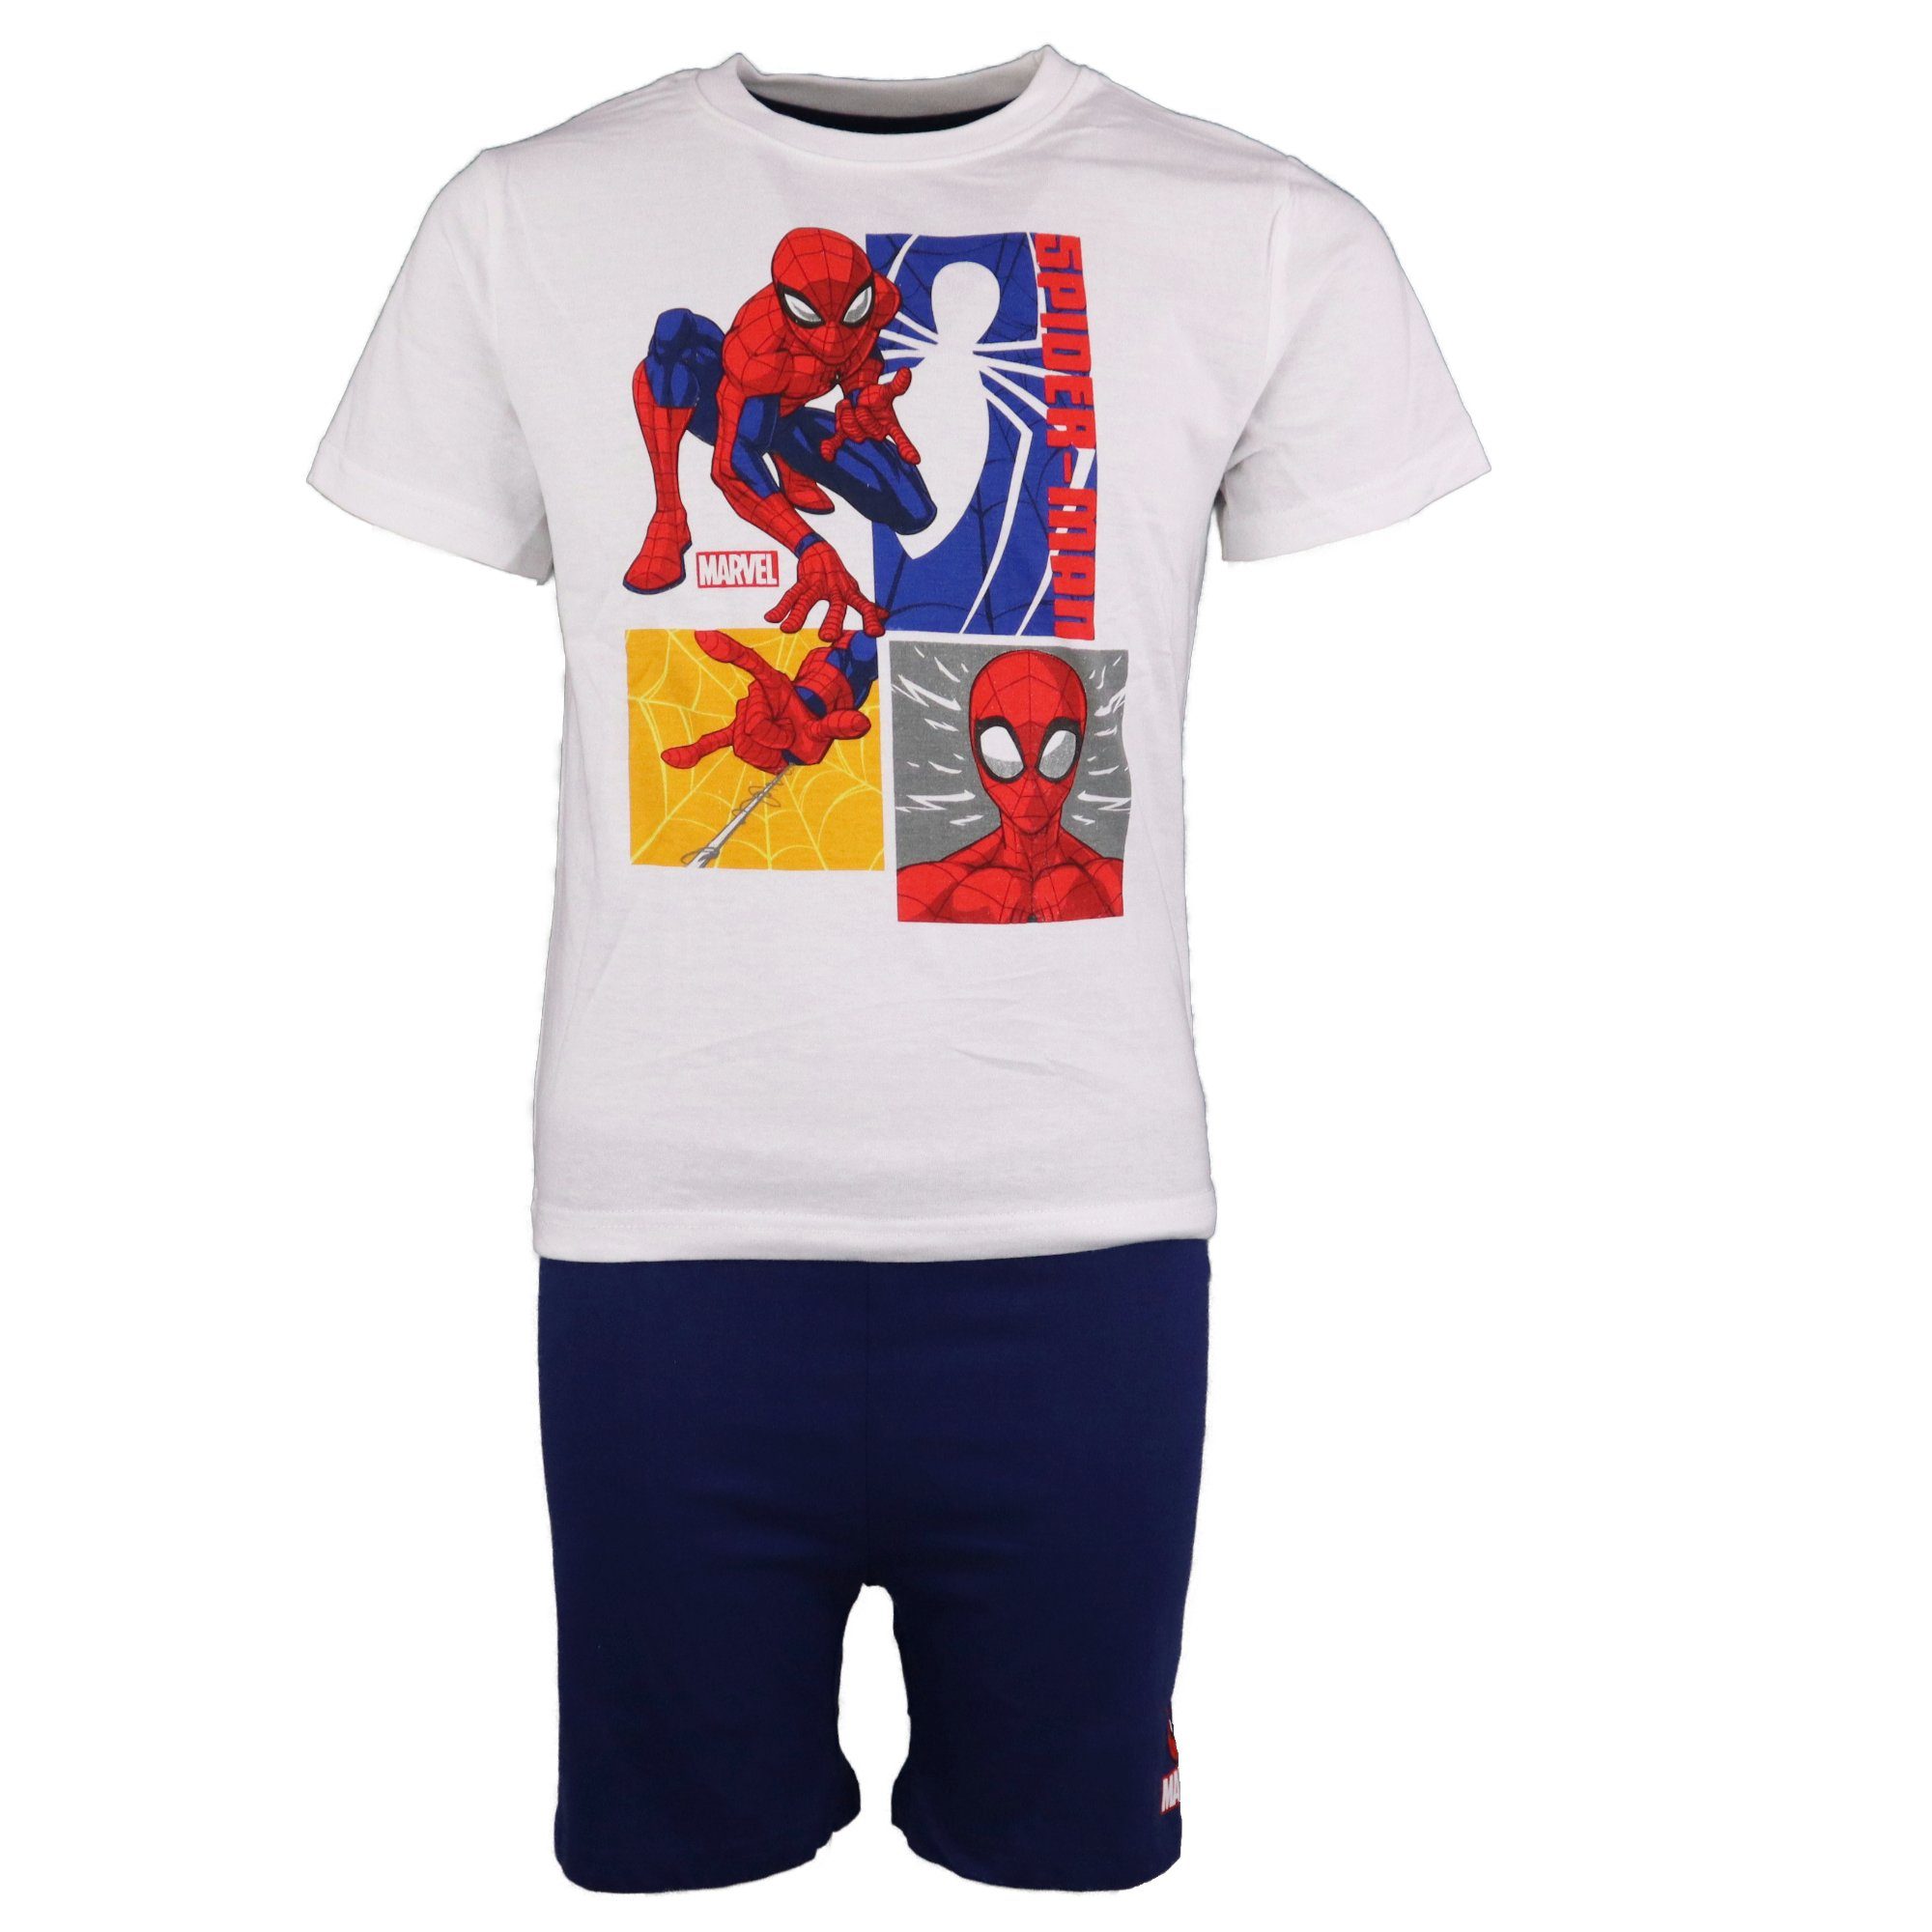 MARVEL Schlafanzug Spiderman Jungen Kinder Pyjama kurz Gr. 104 bis 134, Baumwolle Weiß